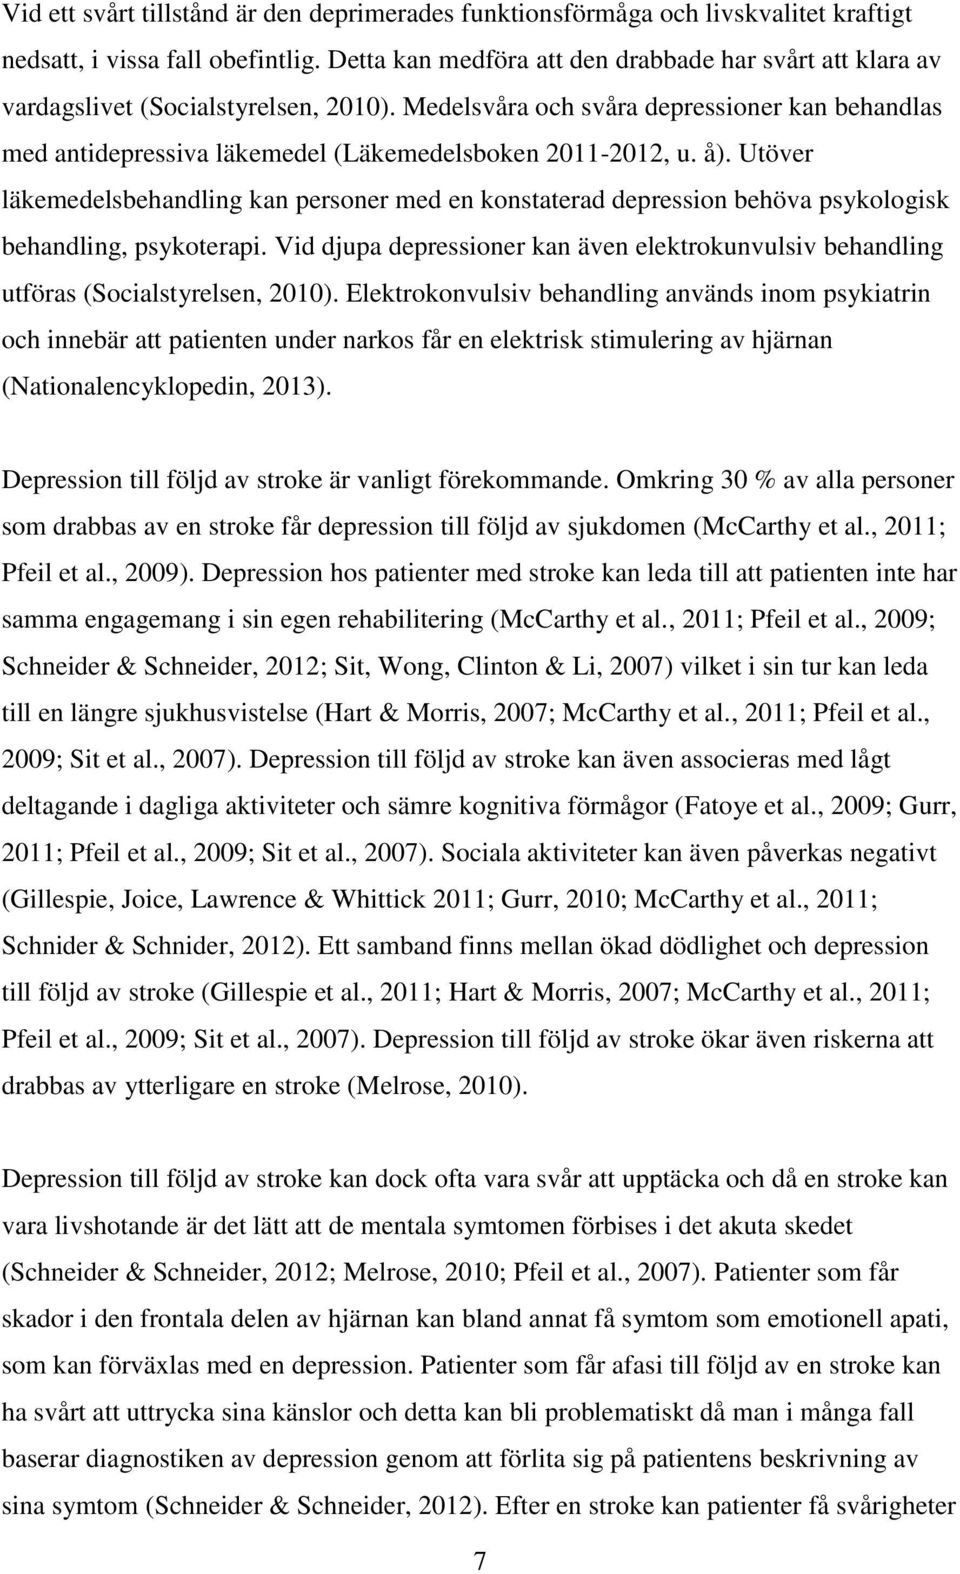 Medelsvåra och svåra depressioner kan behandlas med antidepressiva läkemedel (Läkemedelsboken 2011-2012, u. å).